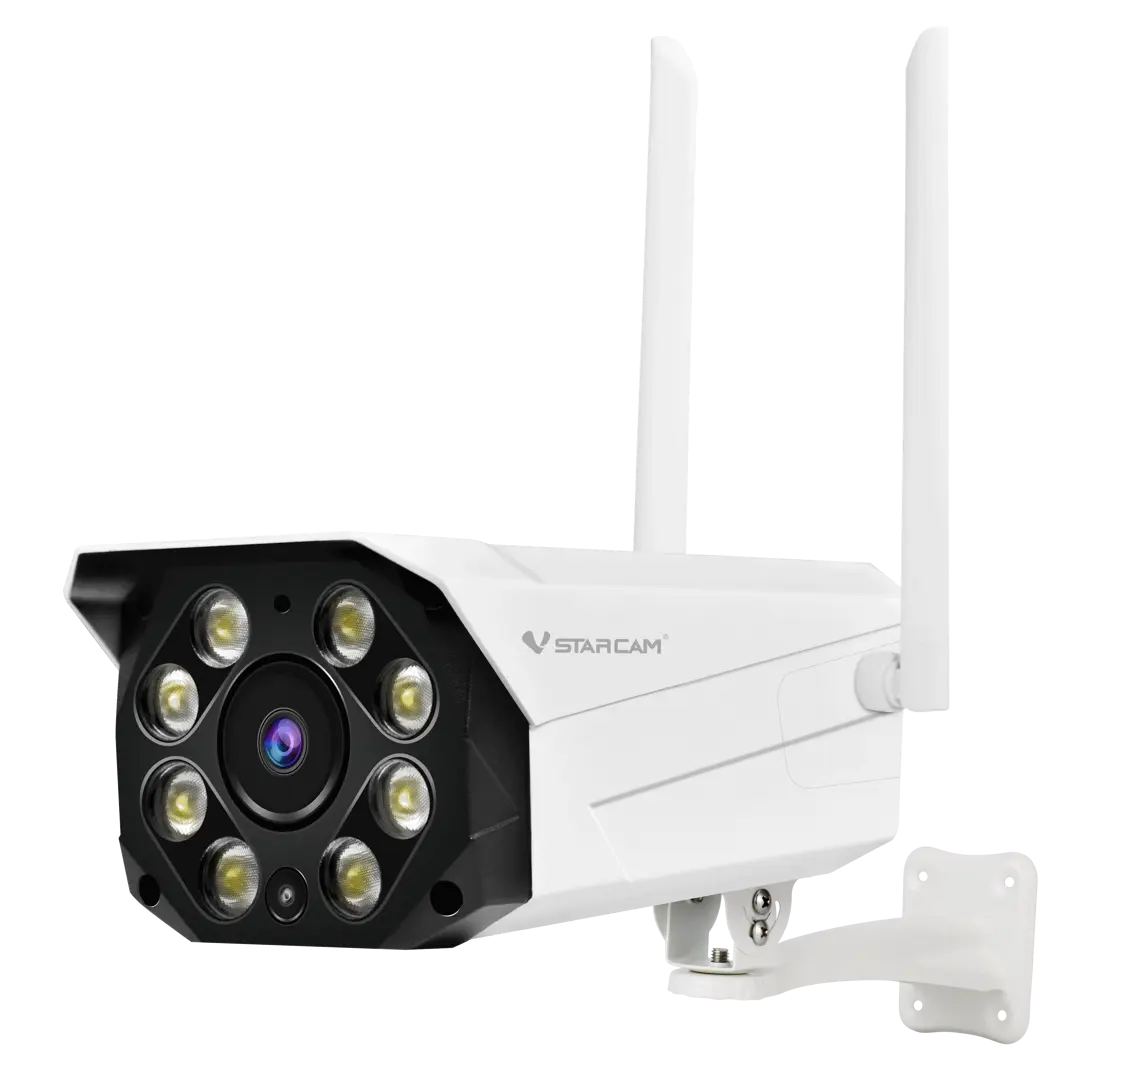 IP камера внутренняя/уличная Vstarcam C8855G 3 Мп 1080P Full HD 4G с Wi-Fi цвет белый